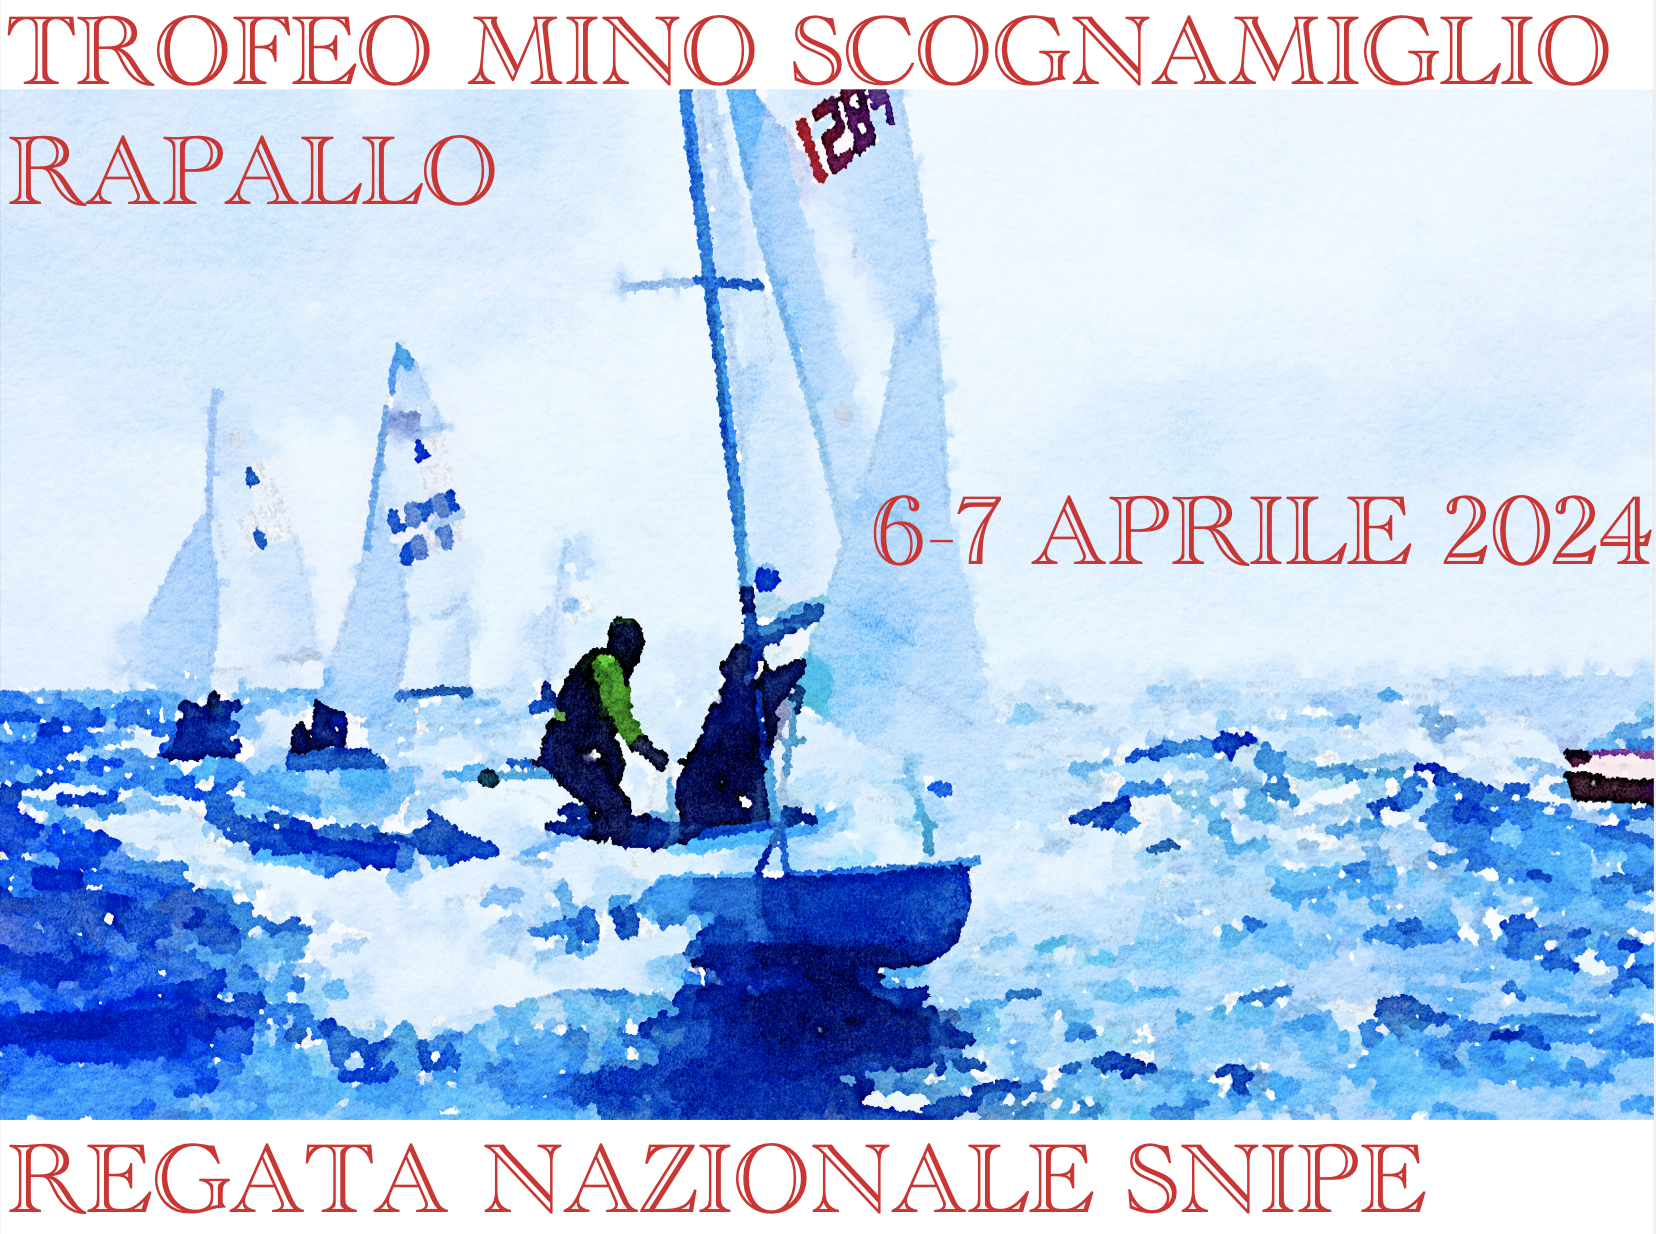 Regata Nazionale Rapallo – Trofeo Mino Scognamiglio Image